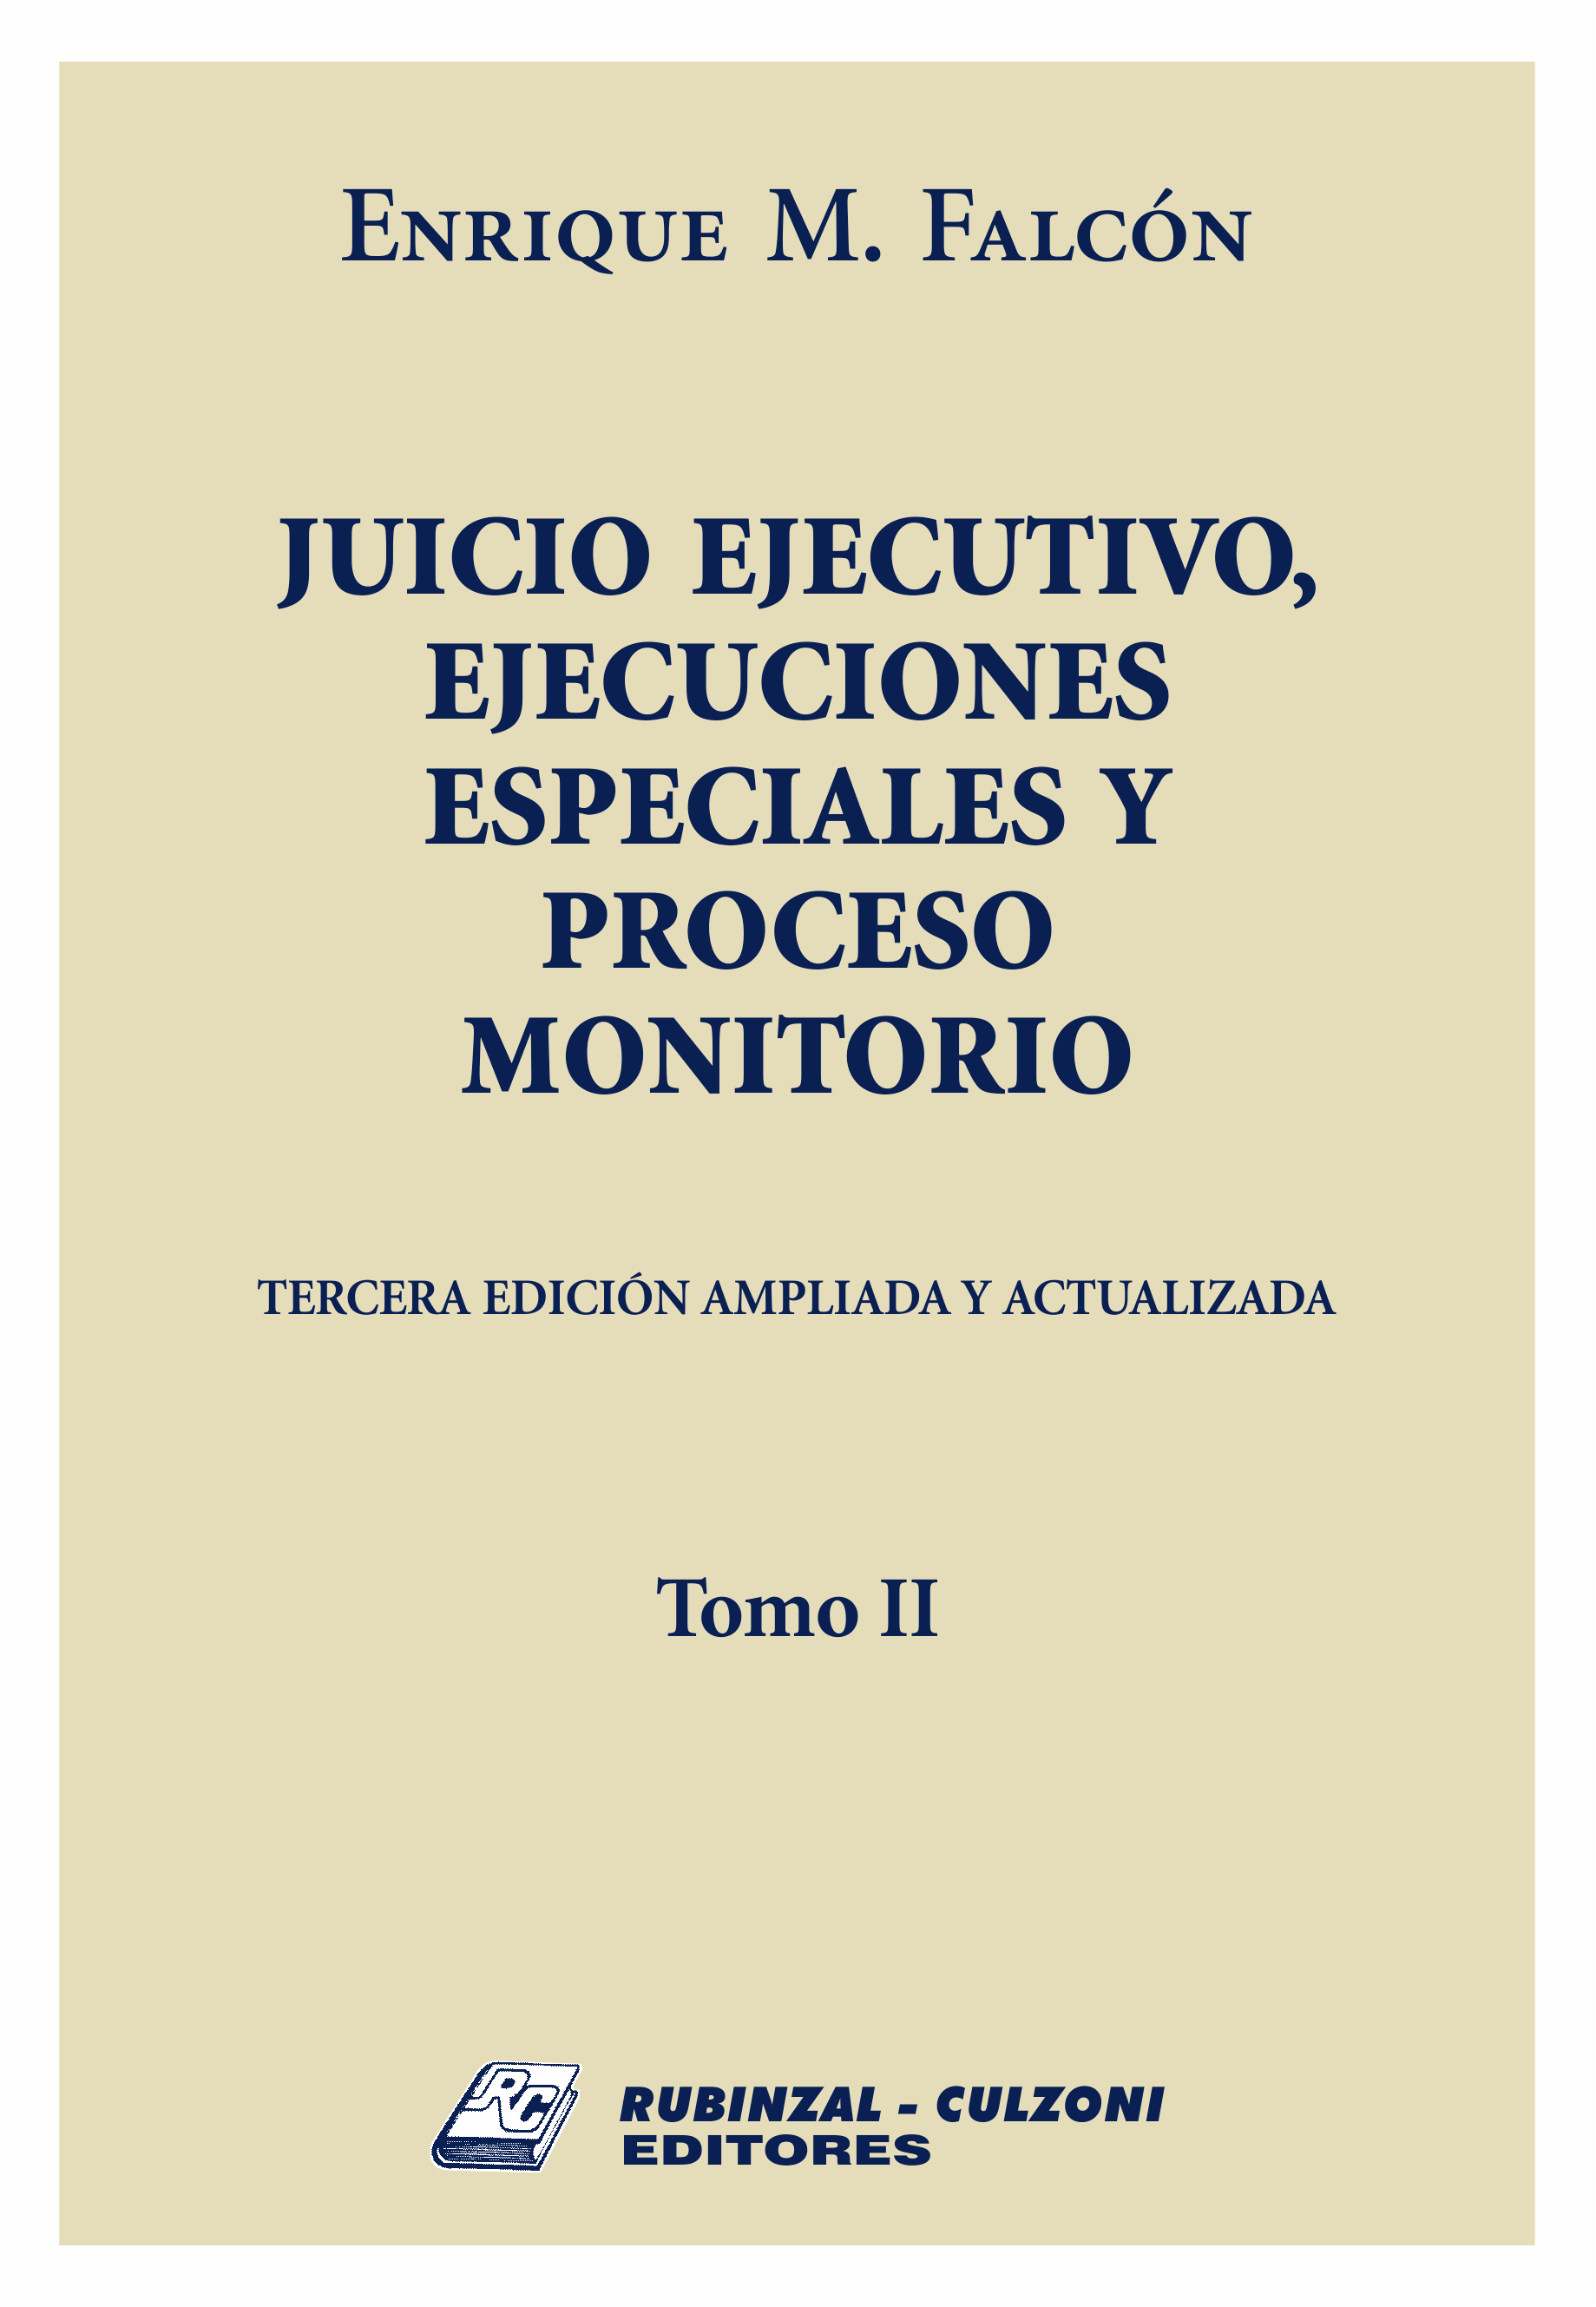 Juicio ejecutivo, ejecuciones especiales y proceso monitorio. 3ª Edición ampliada y actualizada - Tomo II